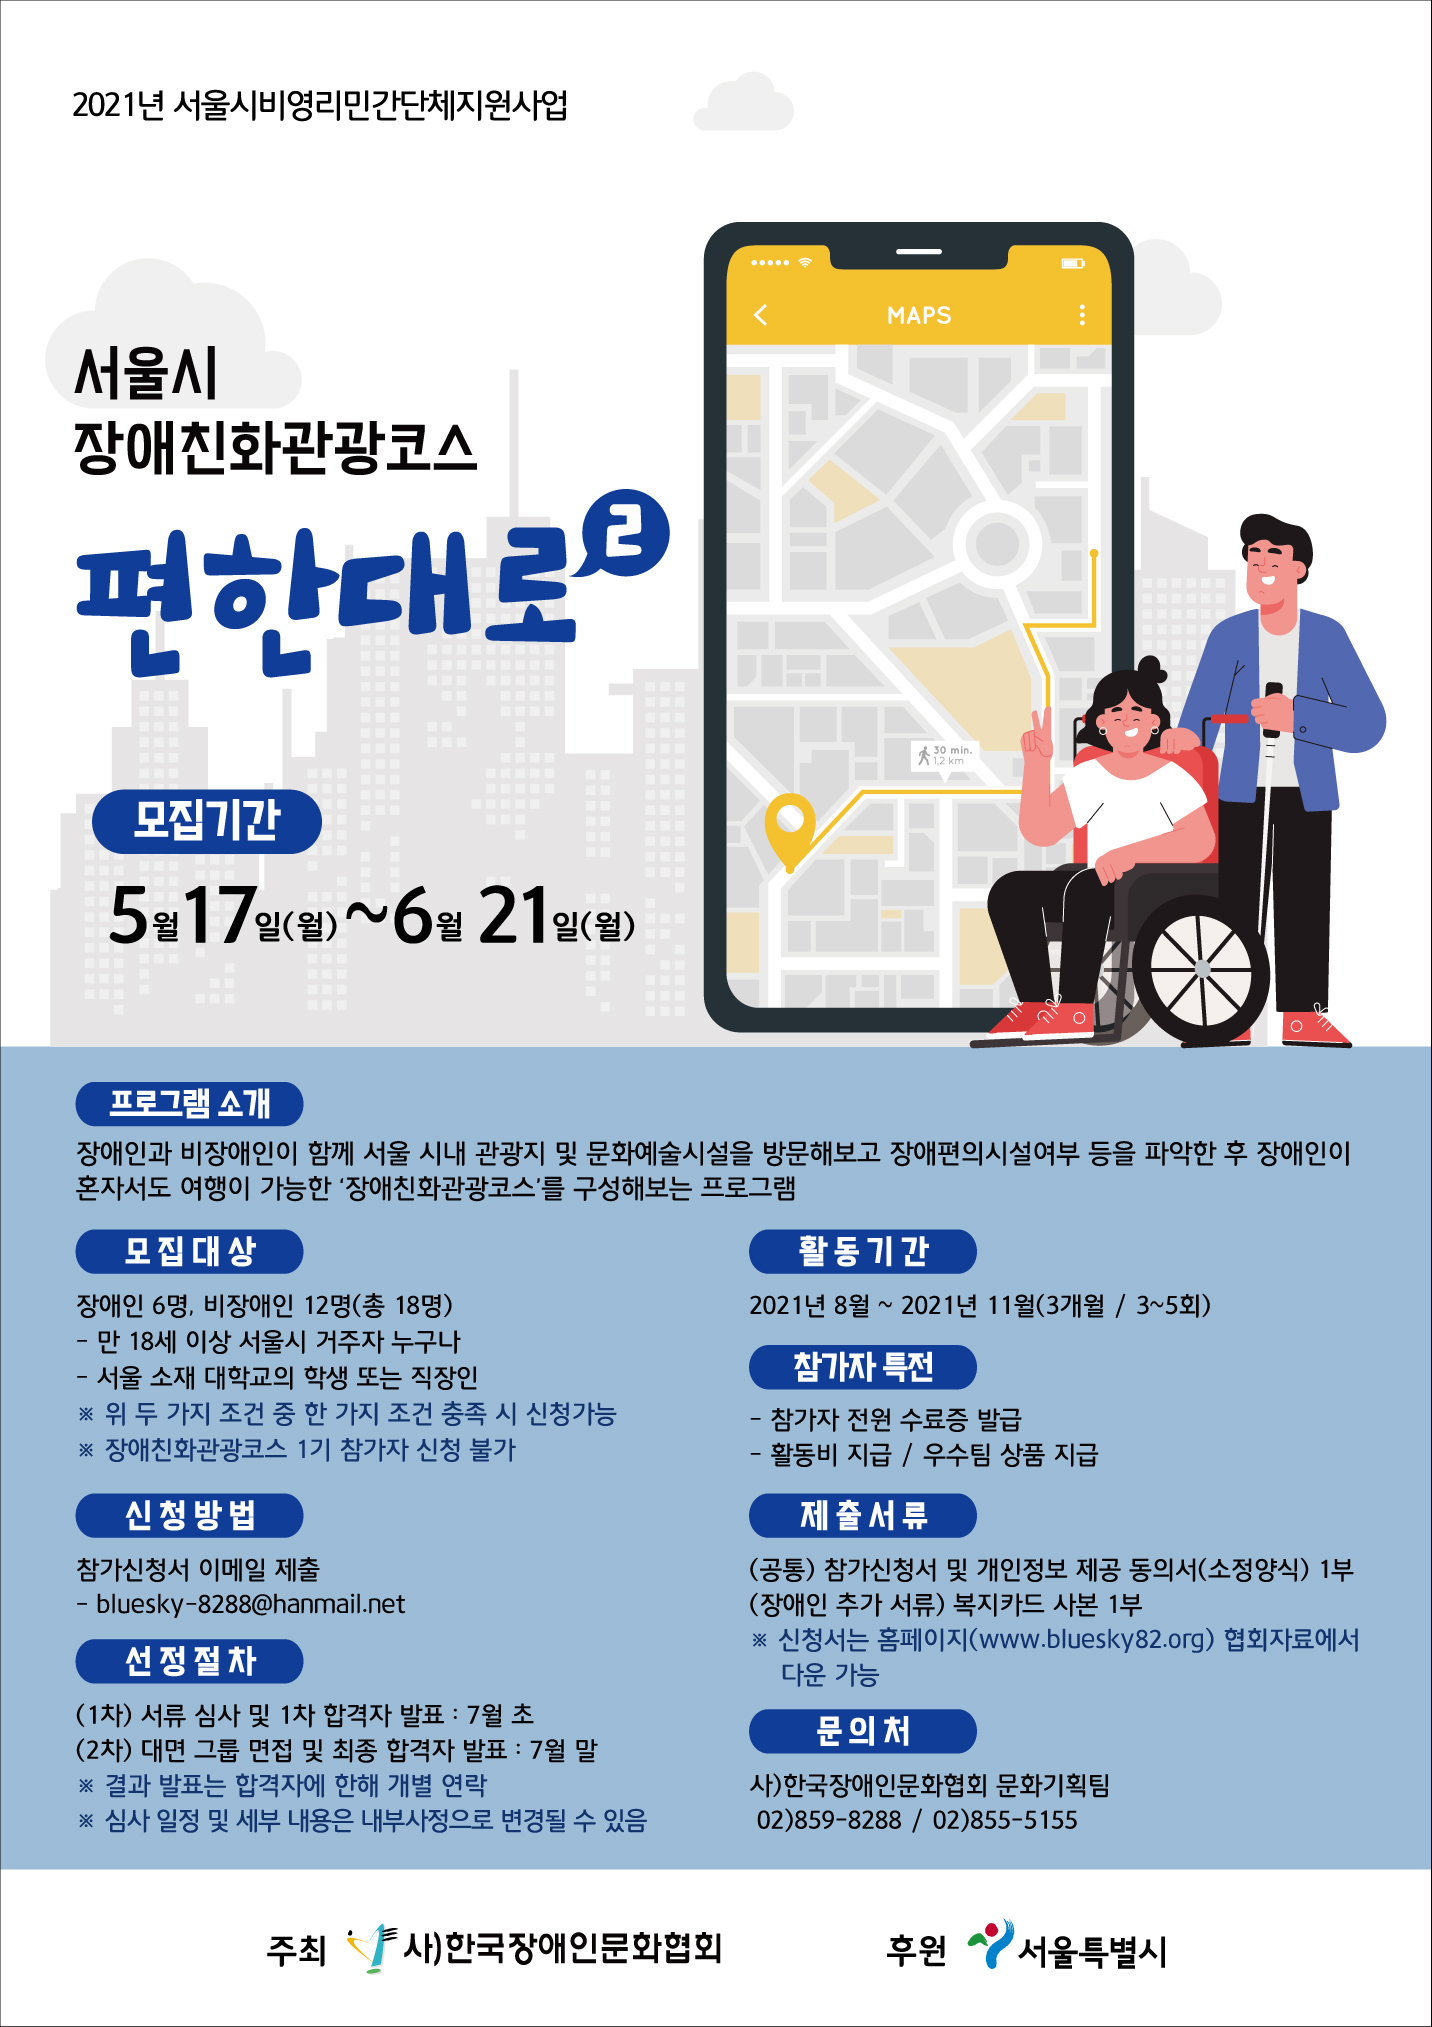 서울시 장애친화 관광코스 "편한대로 2기" 참가자 모집